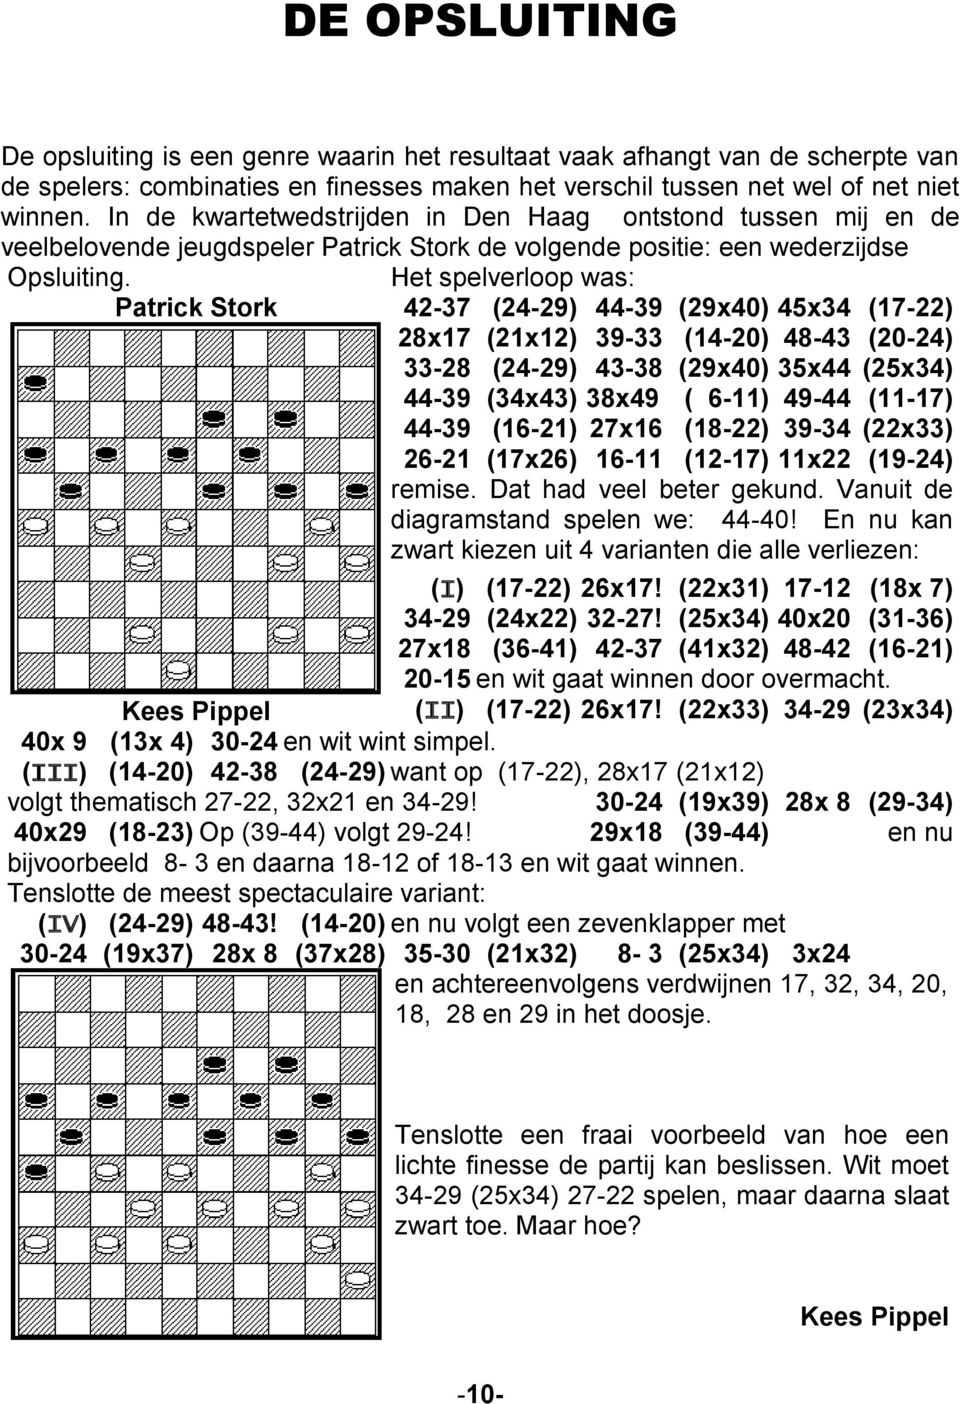 Het spelverloop was: Patrick Stork 42-37 (24-29) 44-39 (29x40) 45x34 (17-22) 28x17 (21x12) 39-33 (14-20) 48-43 (20-24) 33-28 (24-29) 43-38 (29x40) 35x44 (25x34) 44-39 (34x43) 38x49 ( 6-11) 49-44